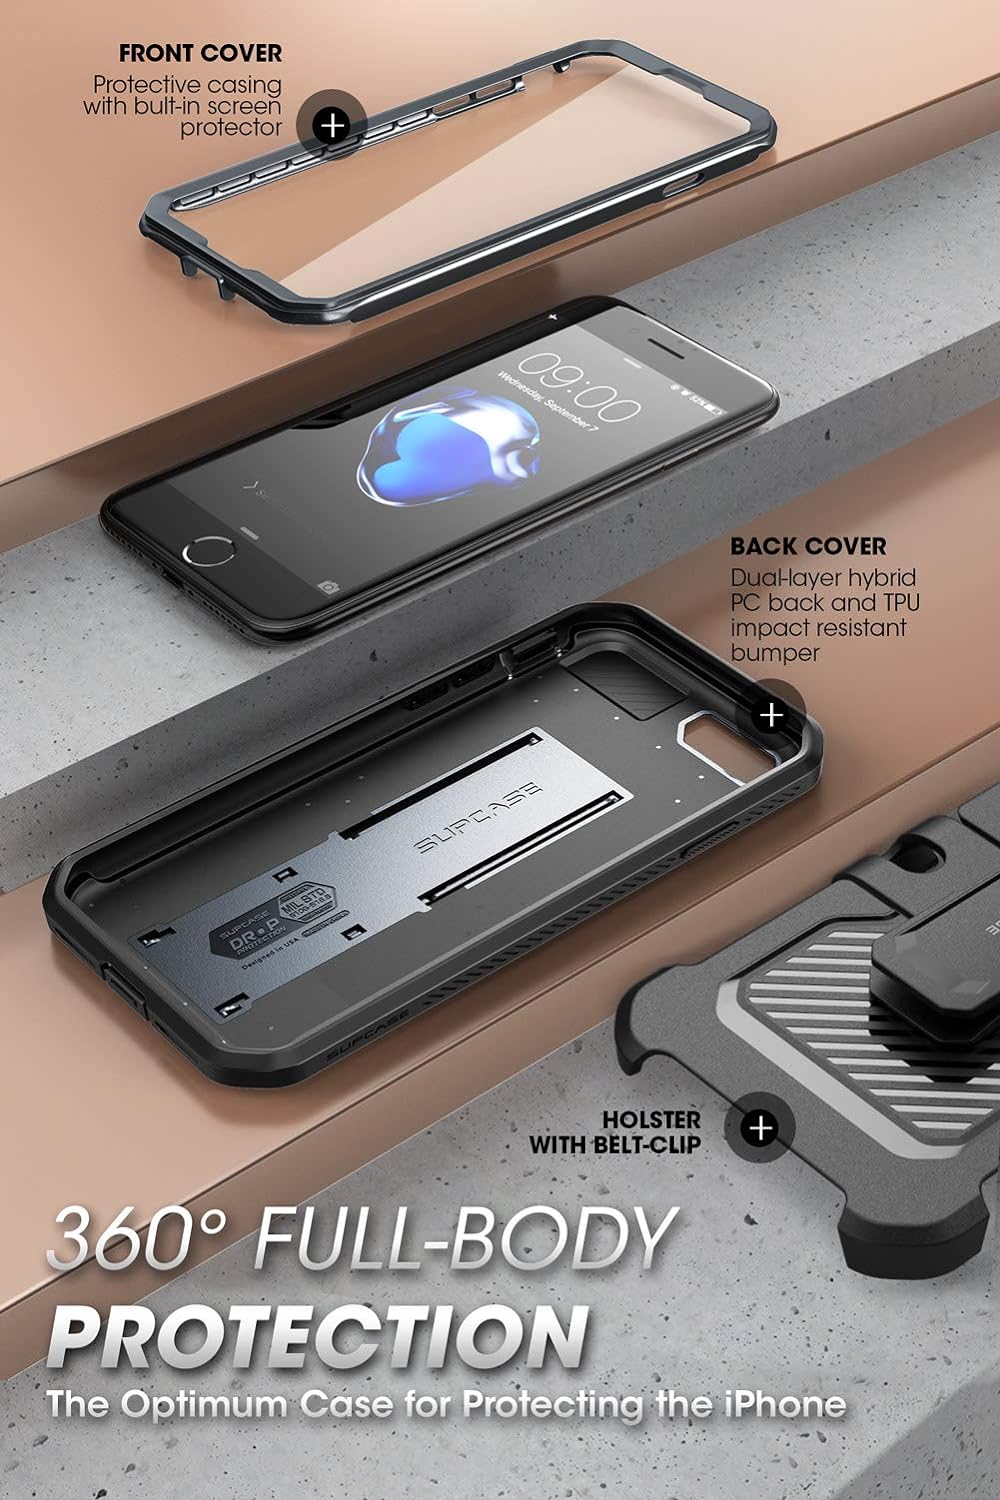 iPhone SE3(第3世代) 2022 SE(第2世代) /iPhone8 /iPhone7 ケース 対応 2020 新しいカバー 液晶保護フィルム と腰かけクリップ付き 米国軍事規格取得 耐衝撃 防塵 二重保護 UBProシリーズ 金属灰